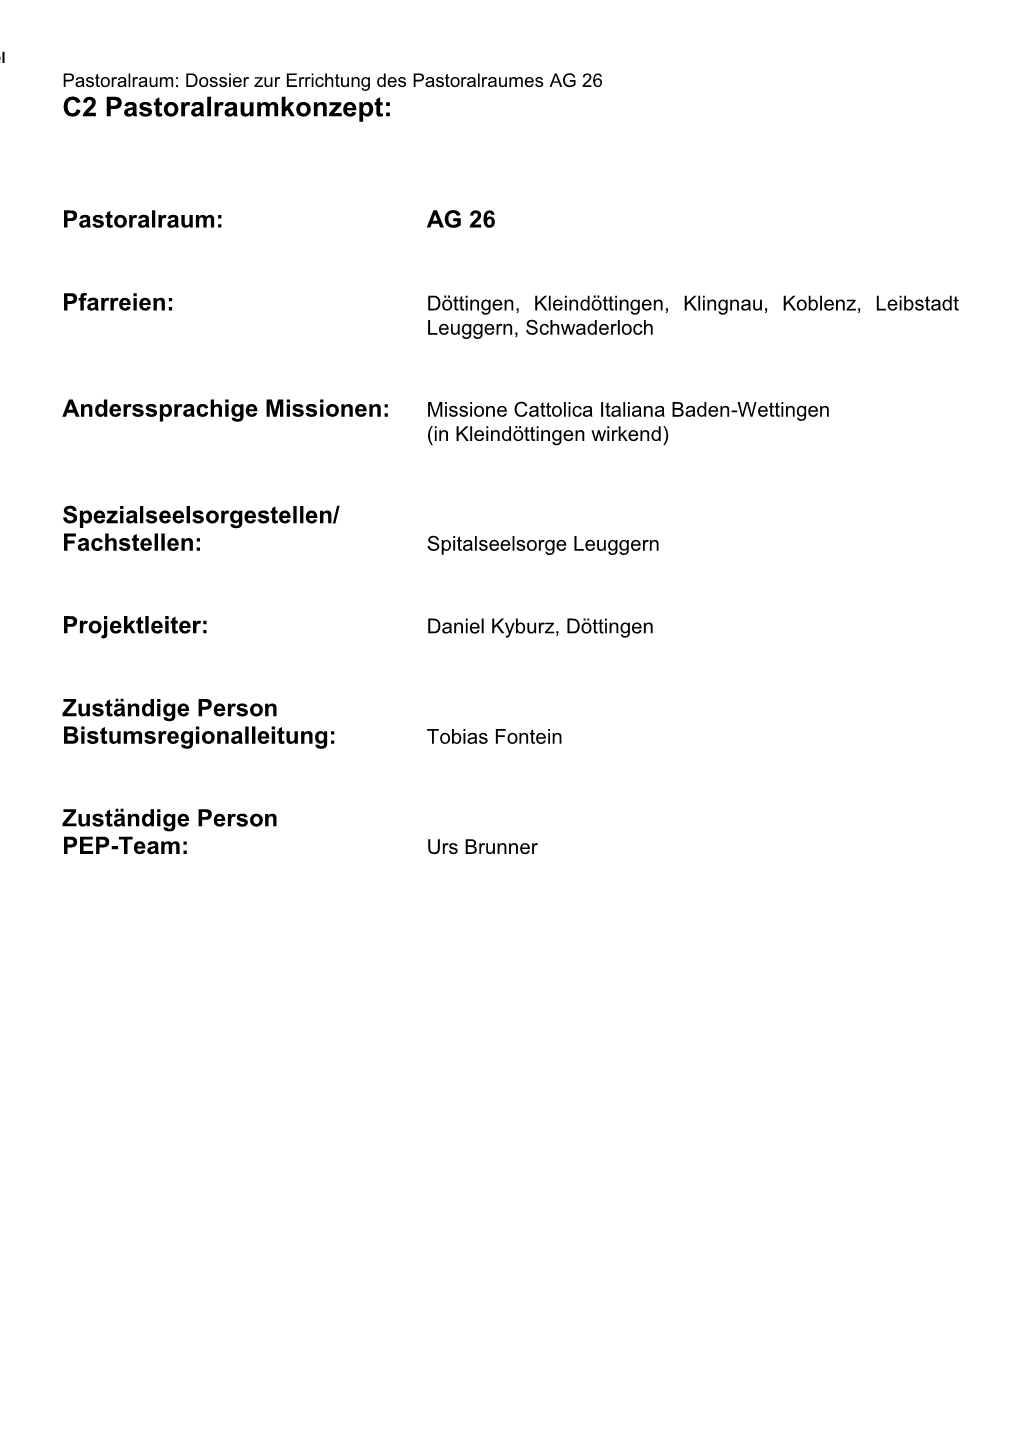 Pastoralraum: Dossier Zur Errichtung Des Pastoralraumes AG 26 C2 Pastoralraumkonzept